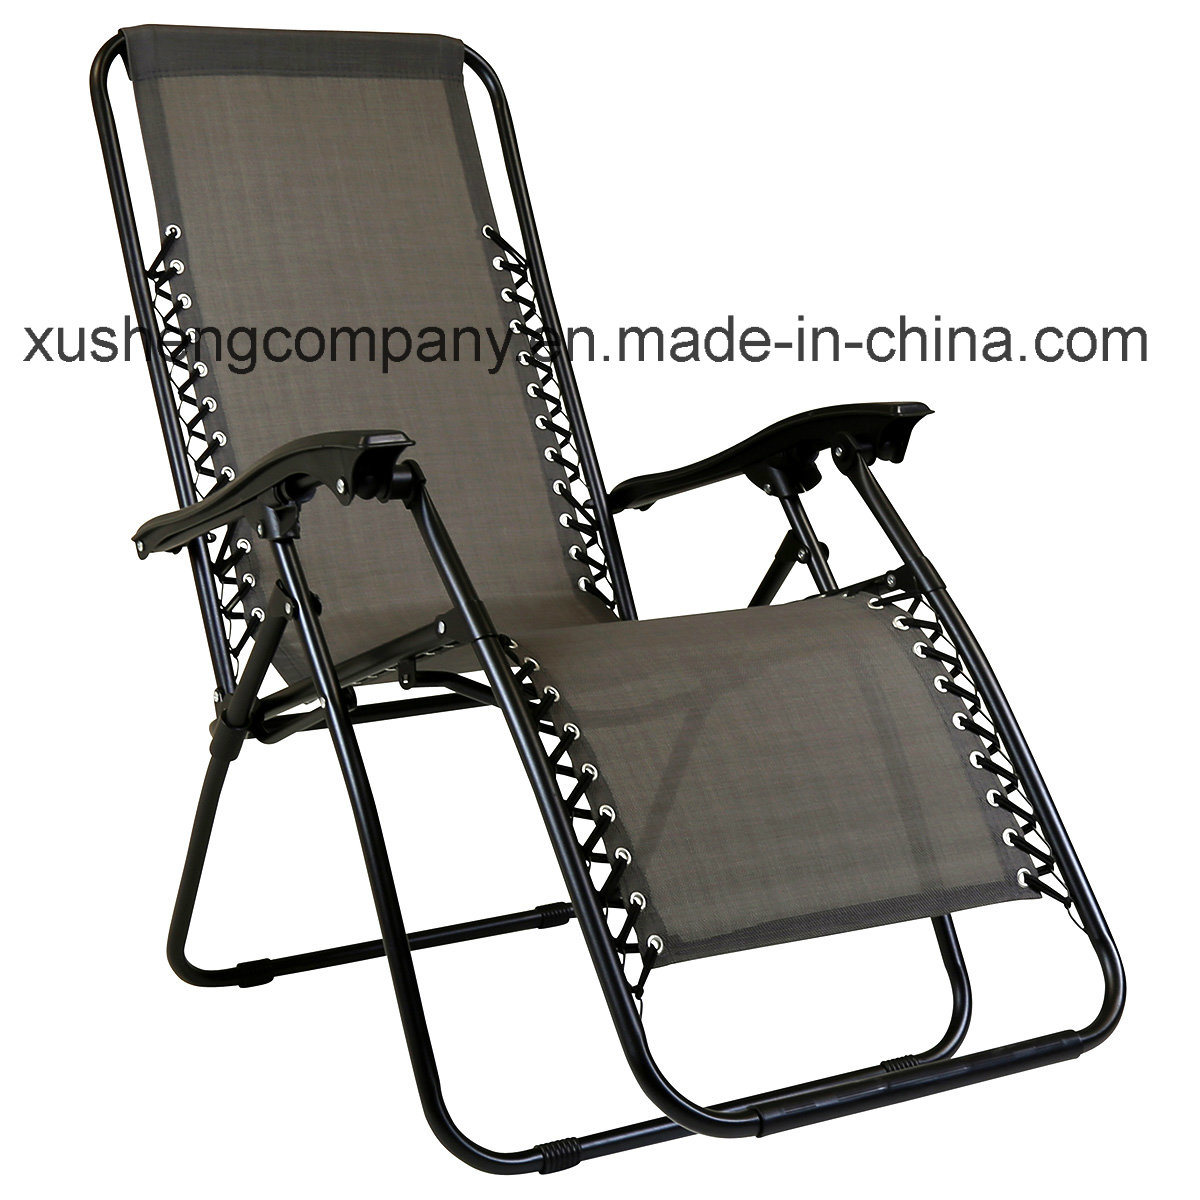 Portable Comfortable Texilene Garden Folding Chair for Lounge